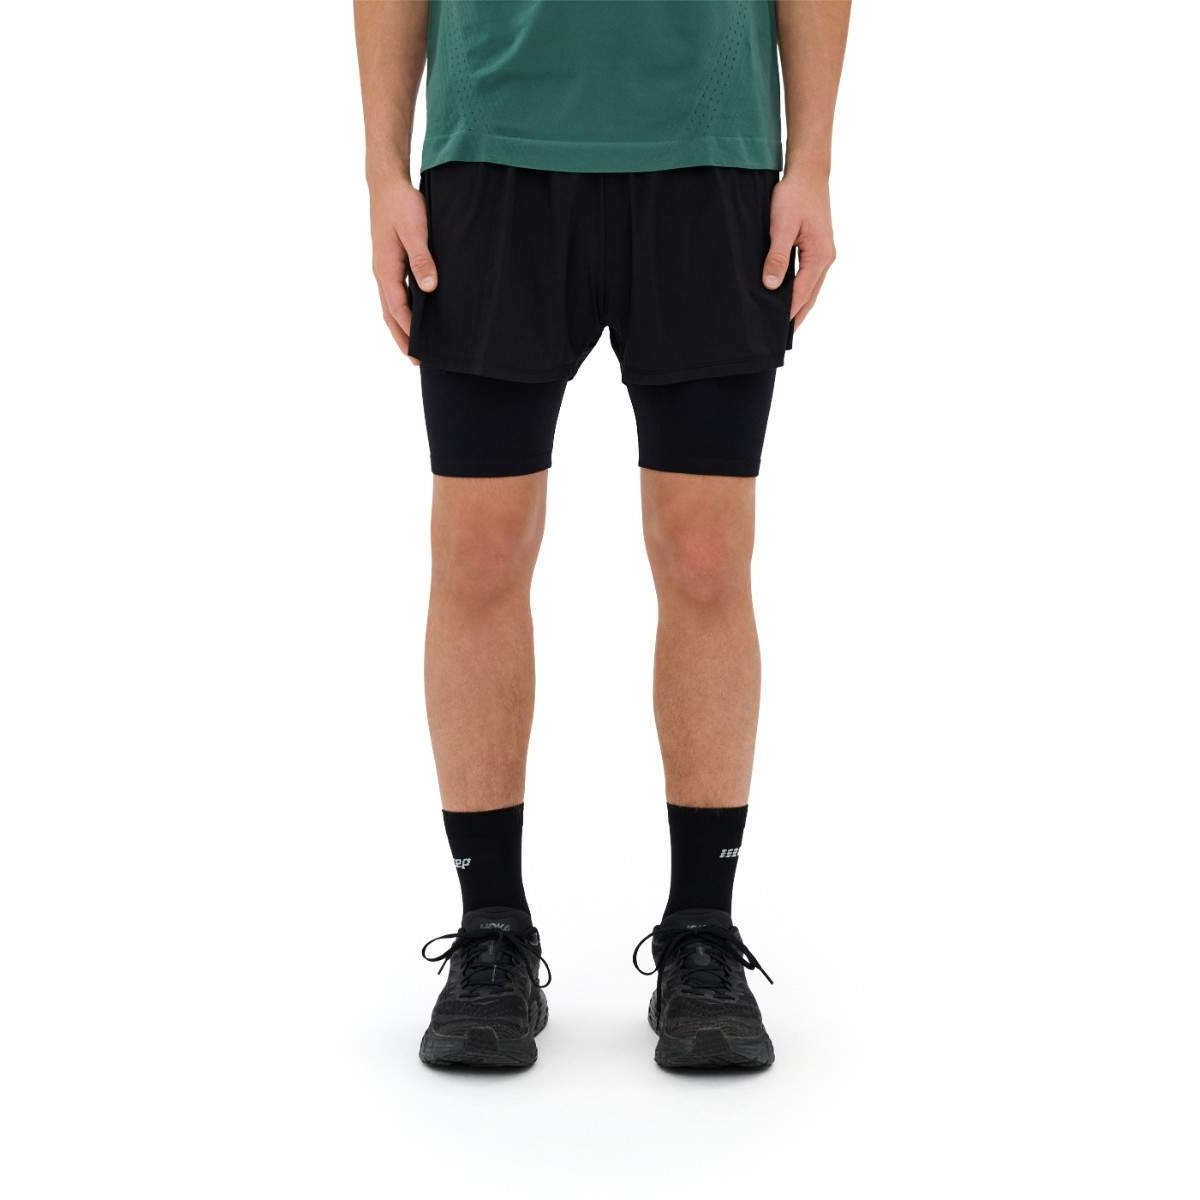 Produktbild von CEP Ultralight 2in1 Shorts V2 Herren - schwarz